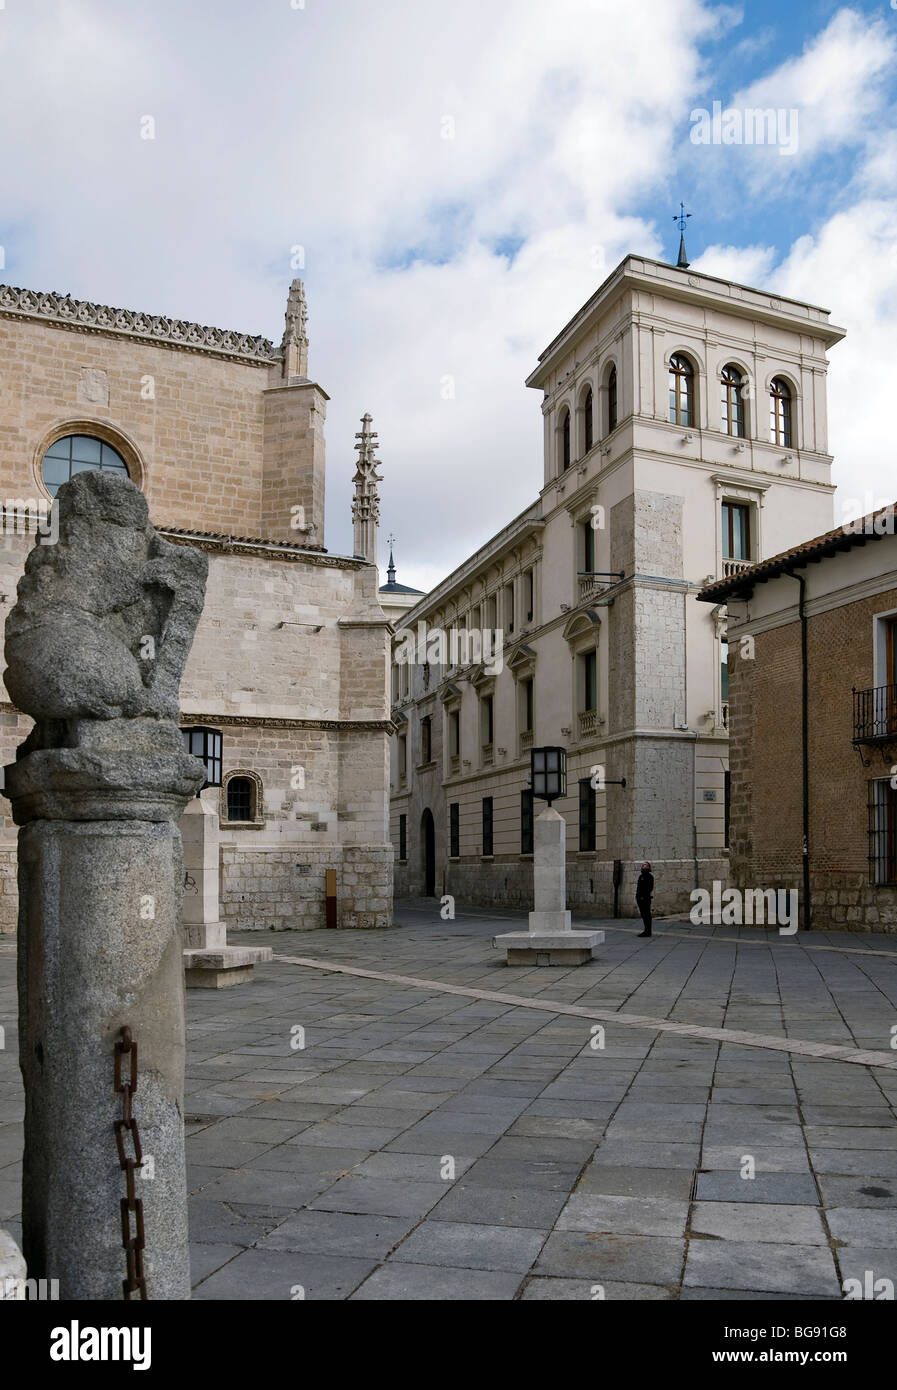 Des sites réels, museum palace dans le carré de l'église de San Pablo dans la ville de Valladolid, Espagne, Europe, Castille-León Banque D'Images